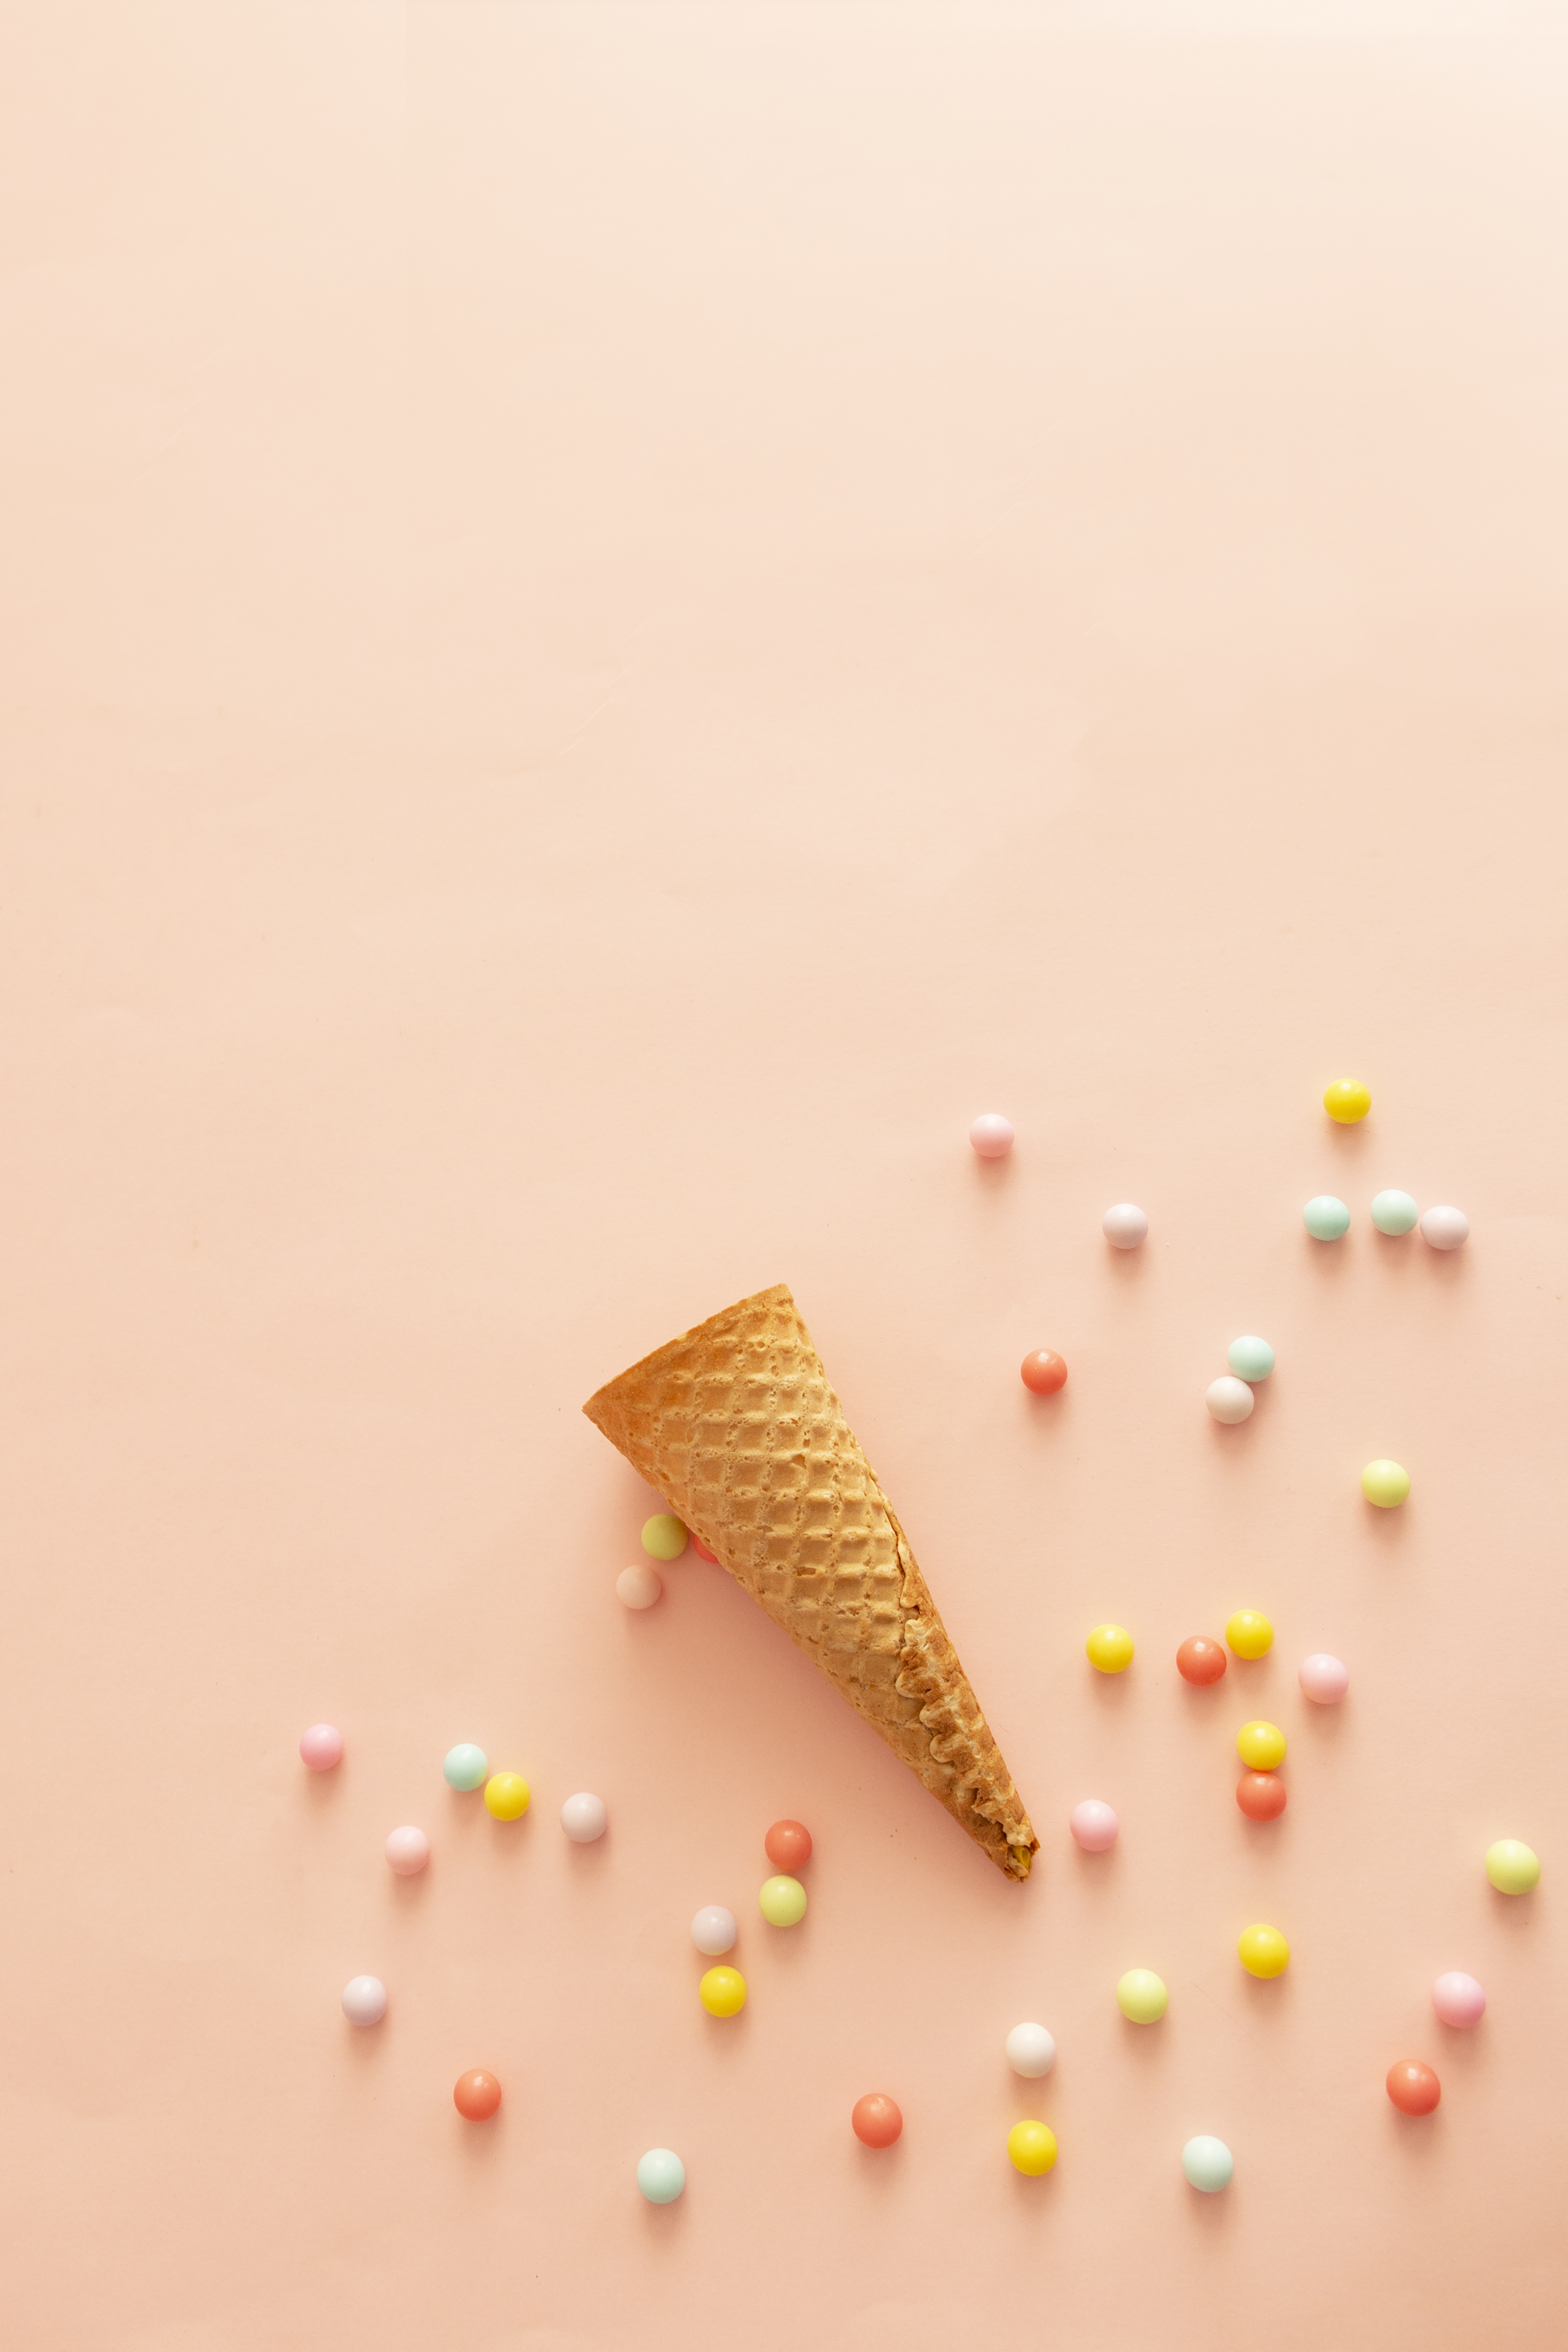 Sweet Colors and Ice Cream Cone Free Stock Photo | picjumbo